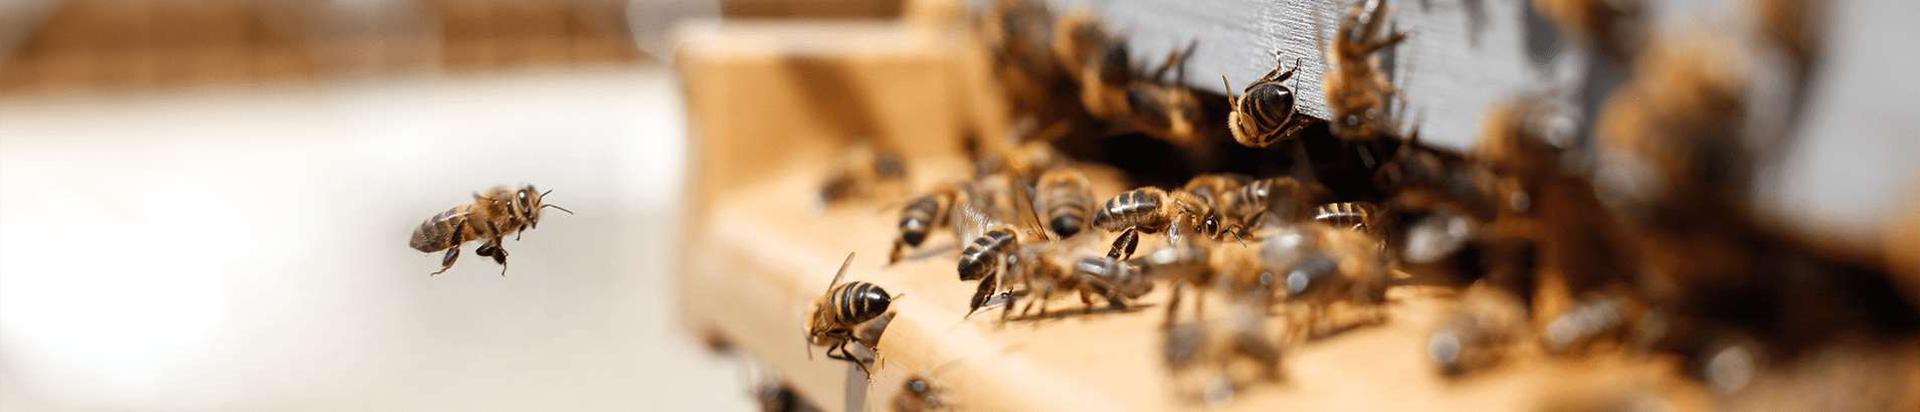 Kvaliteetne Eesti mesi, mida toodab Sulle pereettevõte Lahemaal. Meie mett leiab kauplusekettidest üle Eesti! Lahemaa mesi, mesilaste meistriteos!